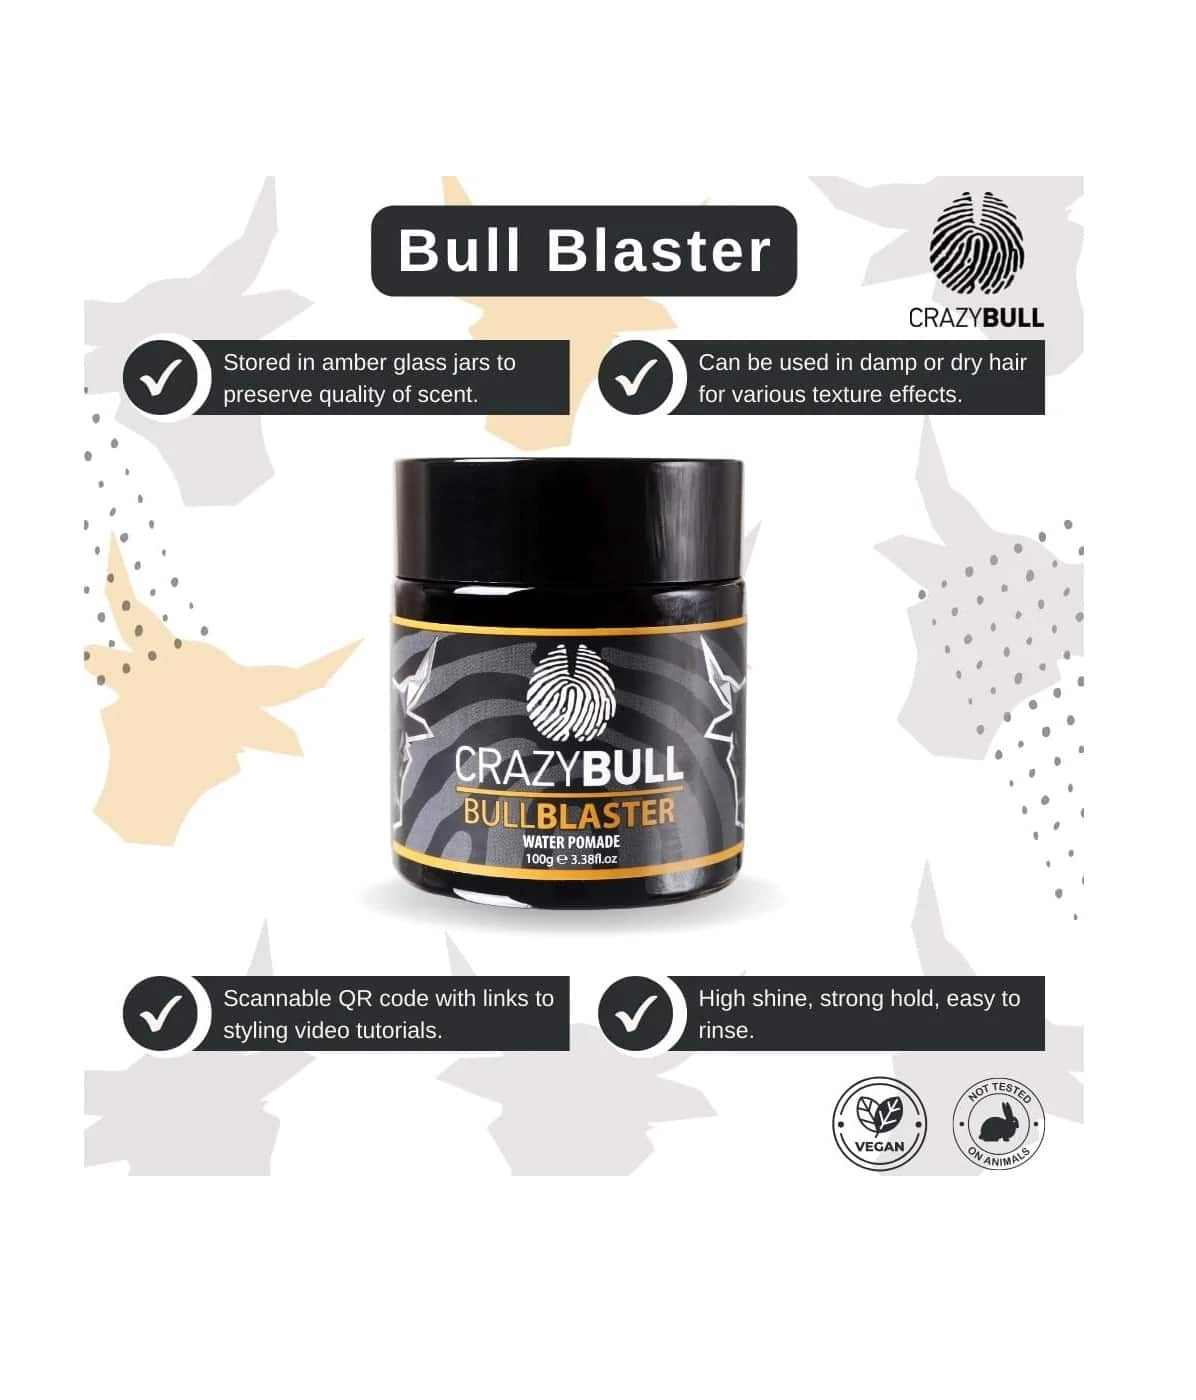 Crazy Bull Bull blaster Water Pomade 100g - Info